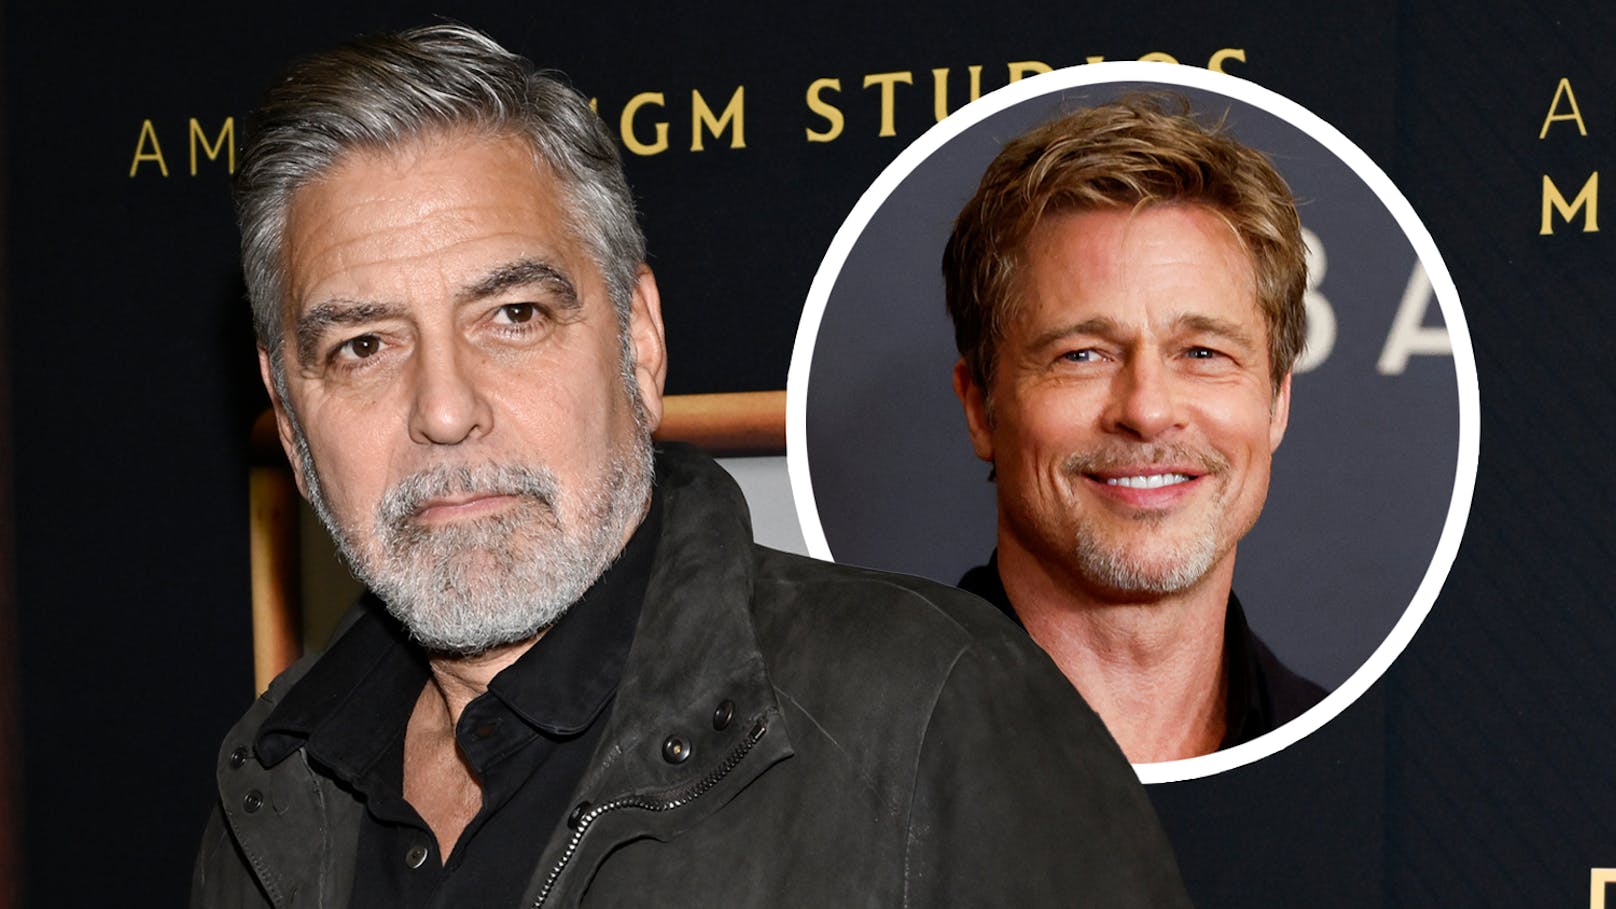 "Sieht nicht so gut aus": Clooney spottet über Pitt